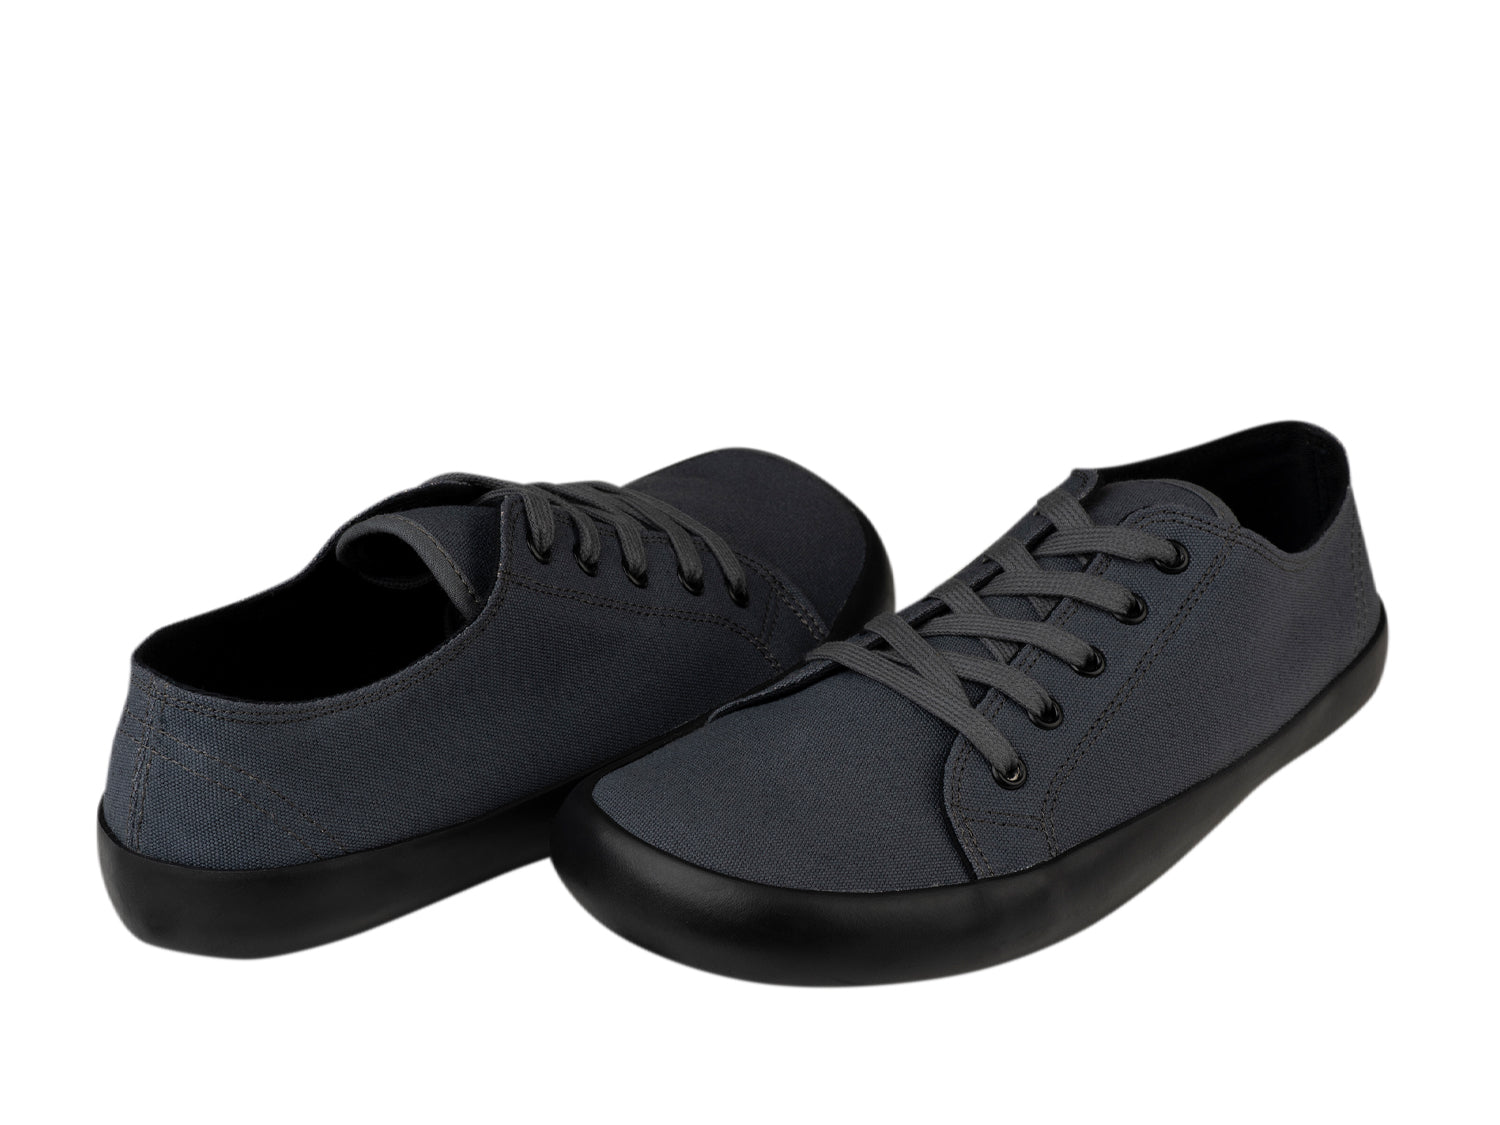 Bohempia Hoska 2.0 barfods sneaker til kvinder og mænd i farven dark gray-black, par